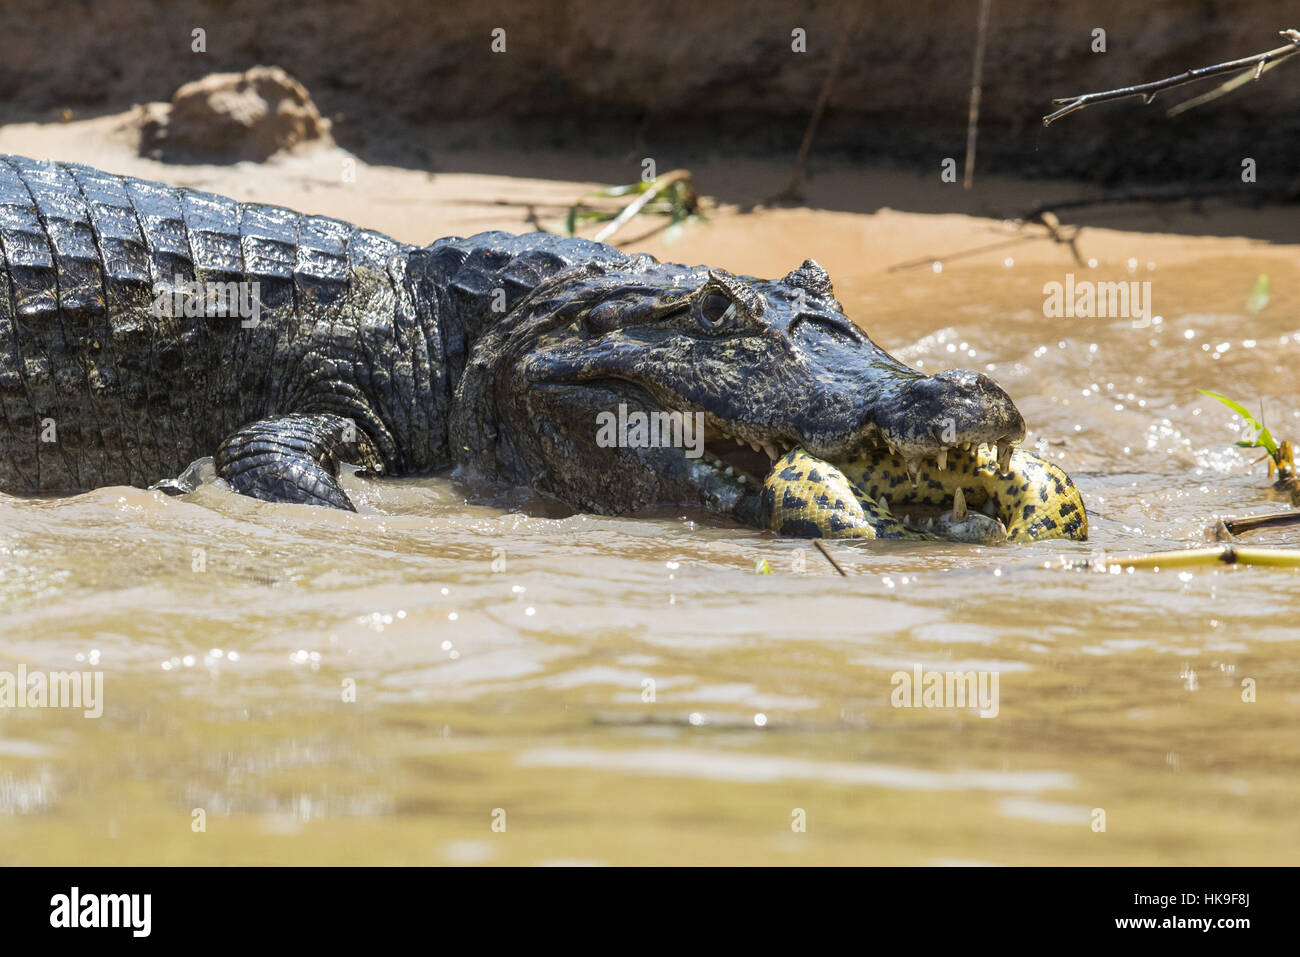 Paraguayan Caiman (Caiman yacare) adult, killing Yellow Anaconda (Eunectes notaeus) prey, Three Brothers River, Mato Grosso, Brazil, September Stock Photo